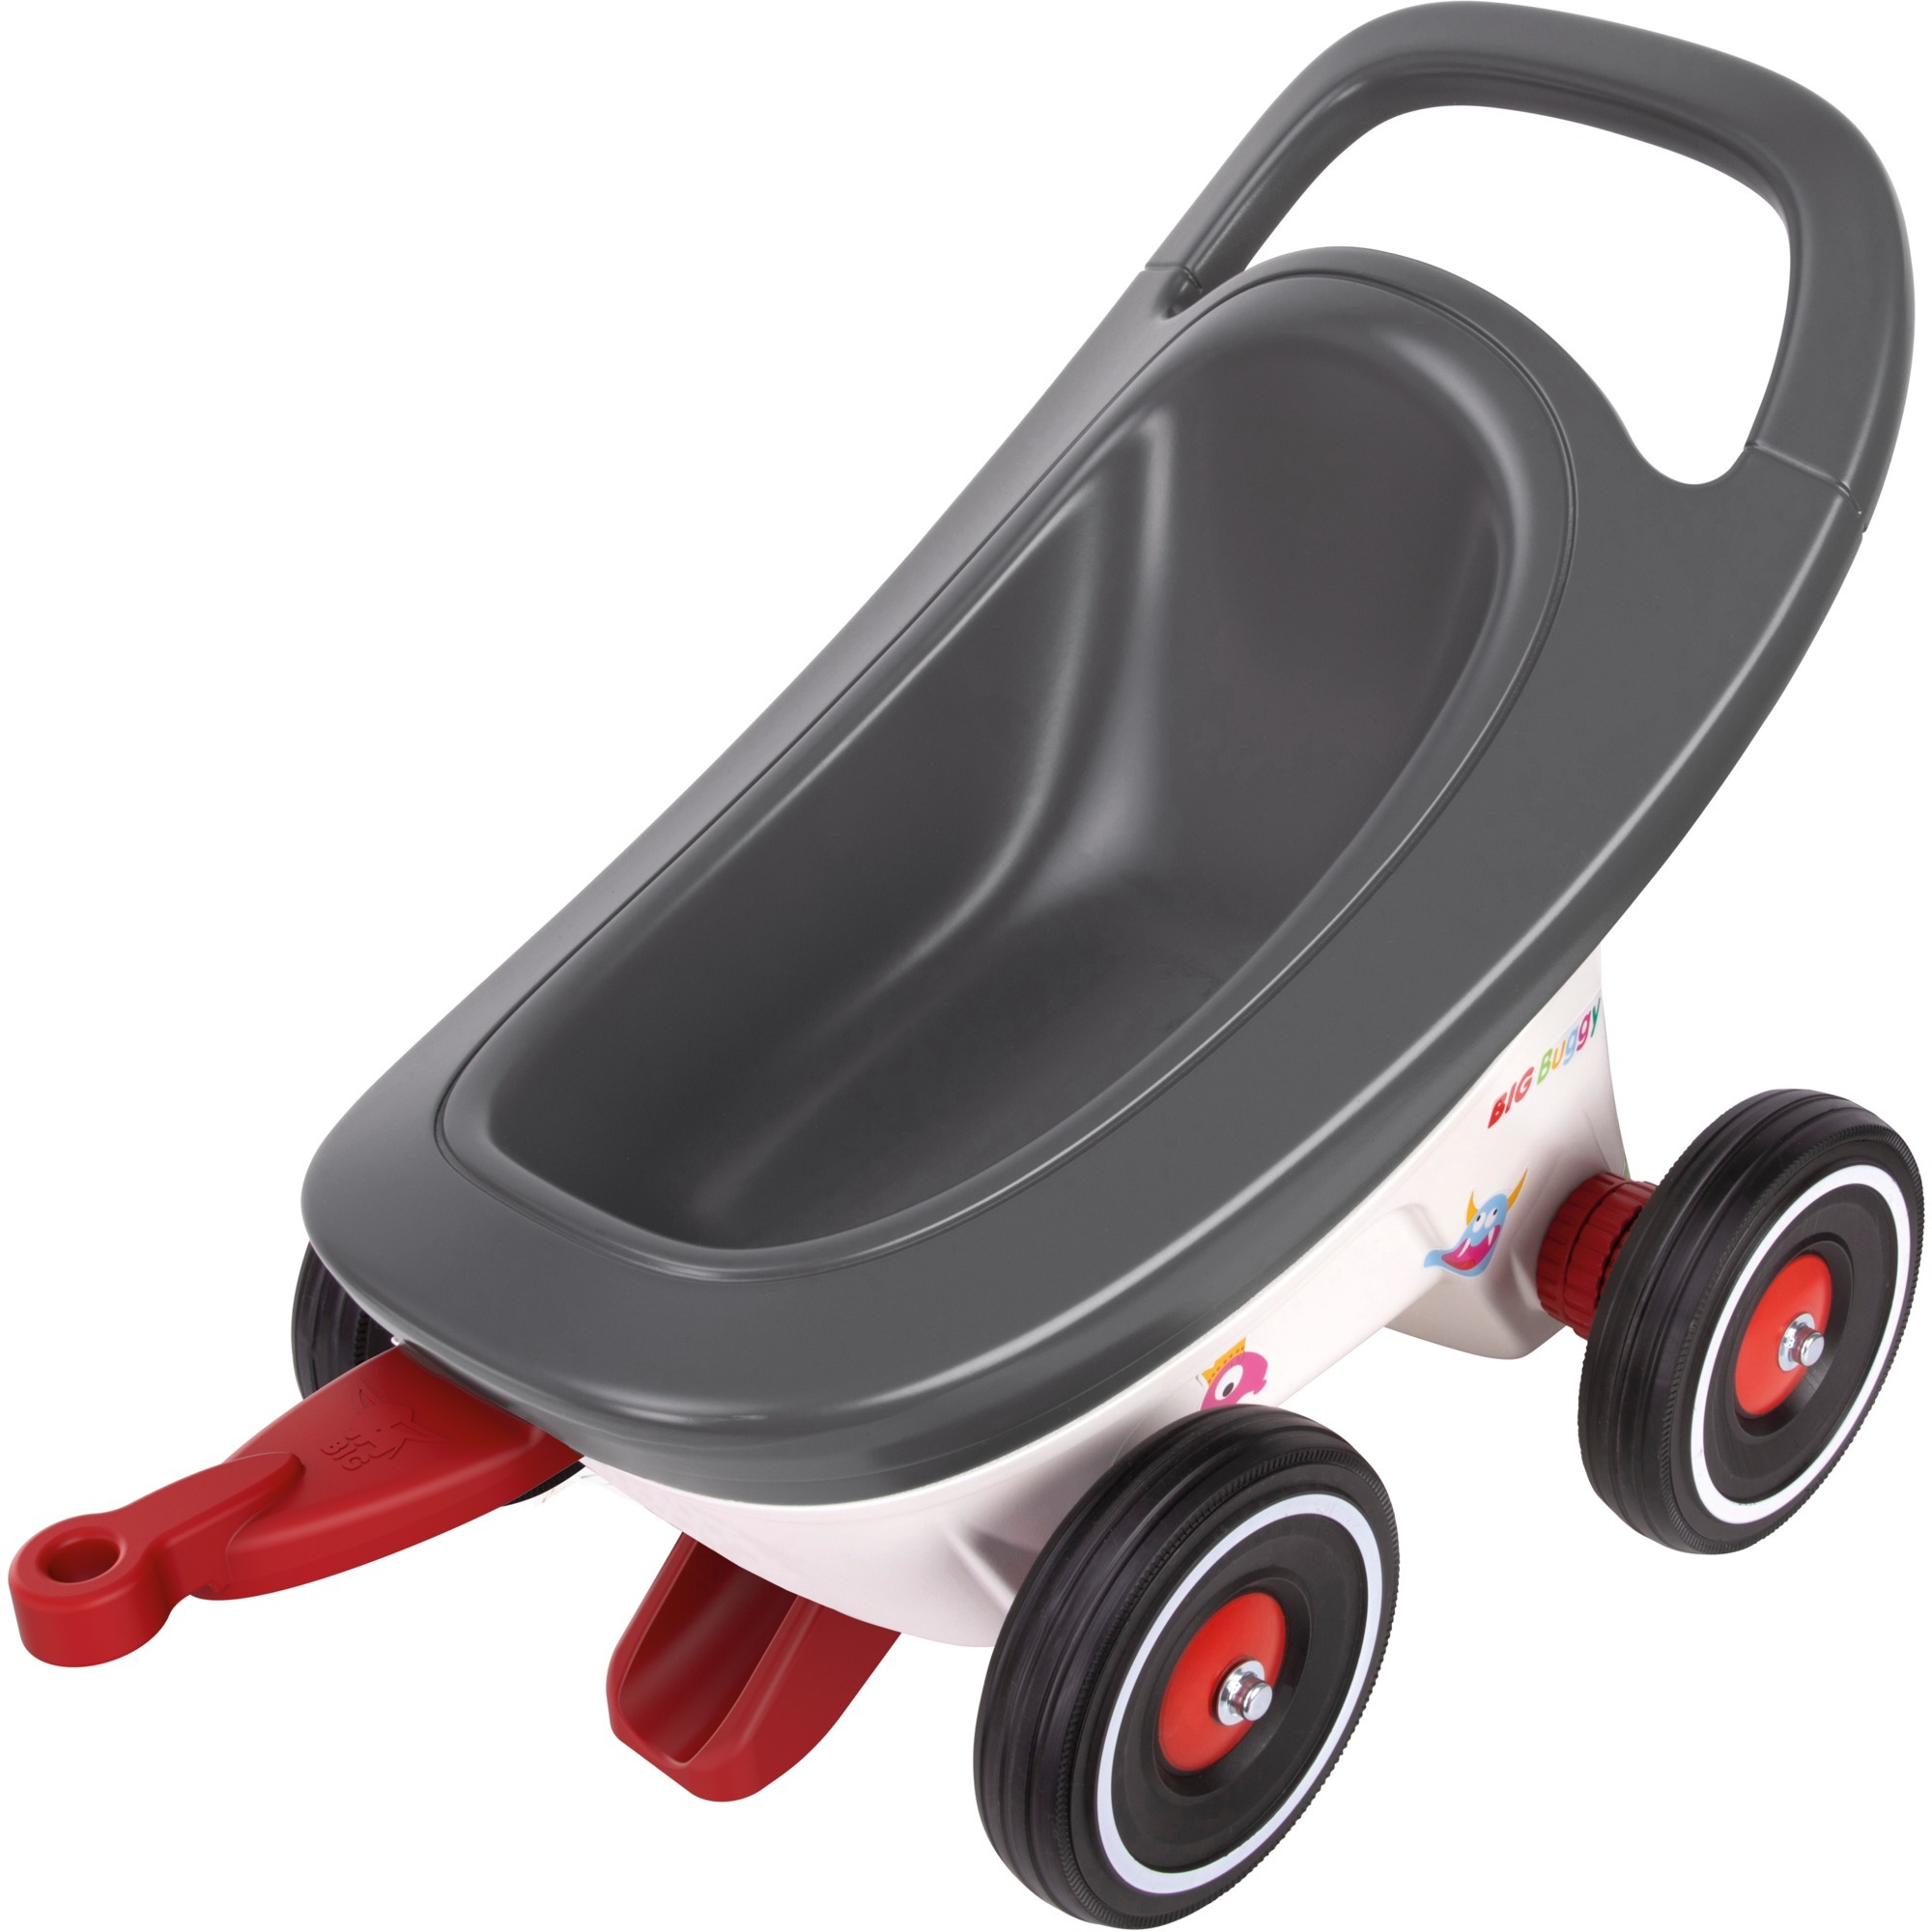 Image of Alternate - Buggy 3-in-1, Kinderfahrzeug online einkaufen bei Alternate